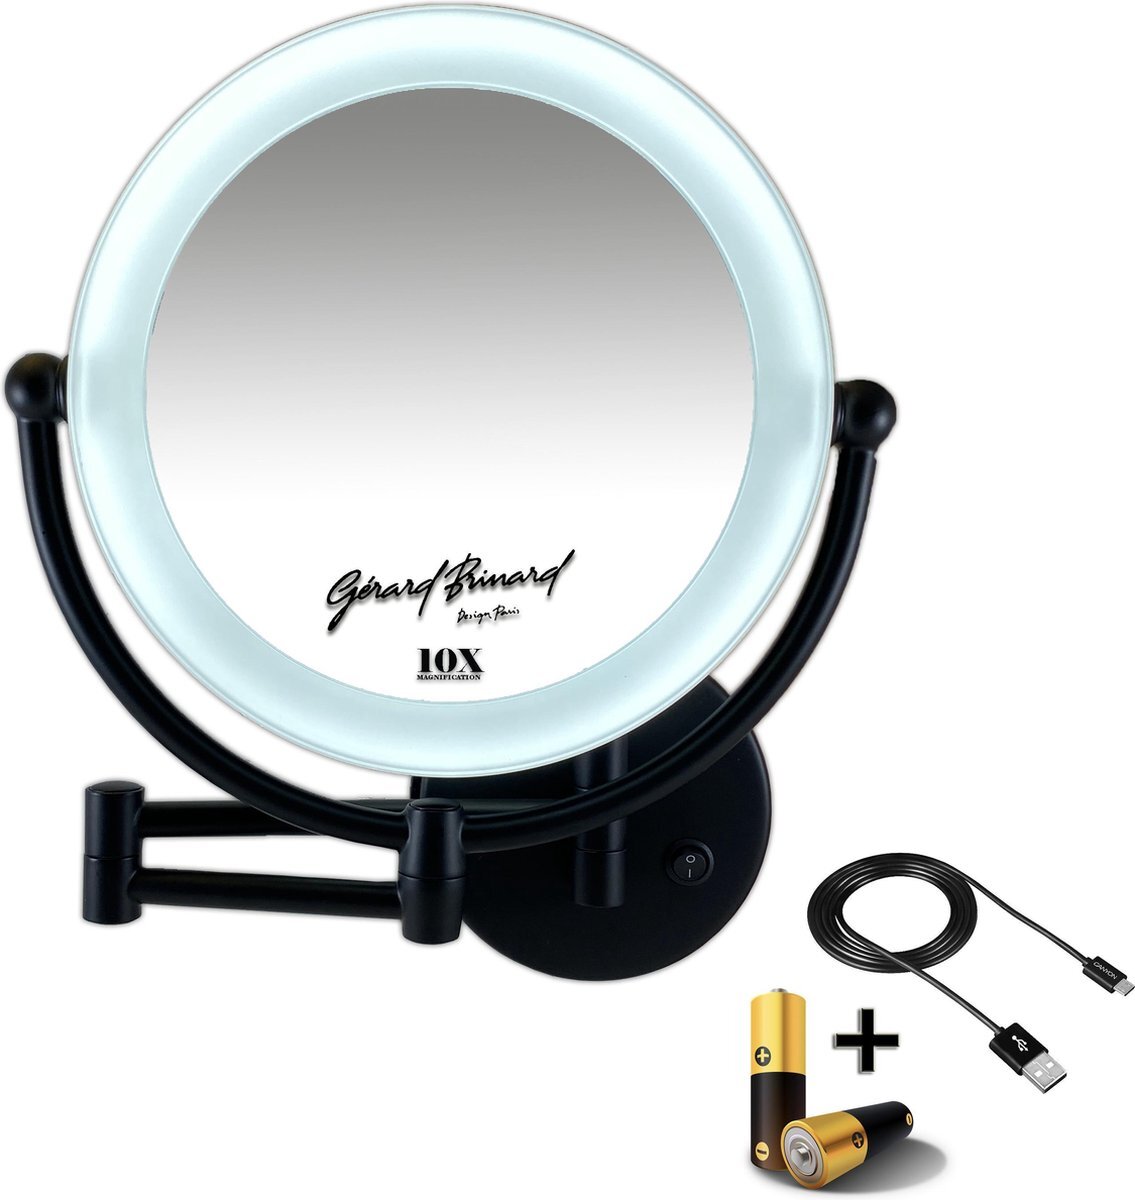 Gerard Brinard Metalen wand knik arm make-up LED Spiegel Mat zwart, Dubbelzijdig verlicht, 10x vergroting 22cm doorsnee, inculsief 4x AA batterijen en stroomkabel(USB) badkamer spiegel